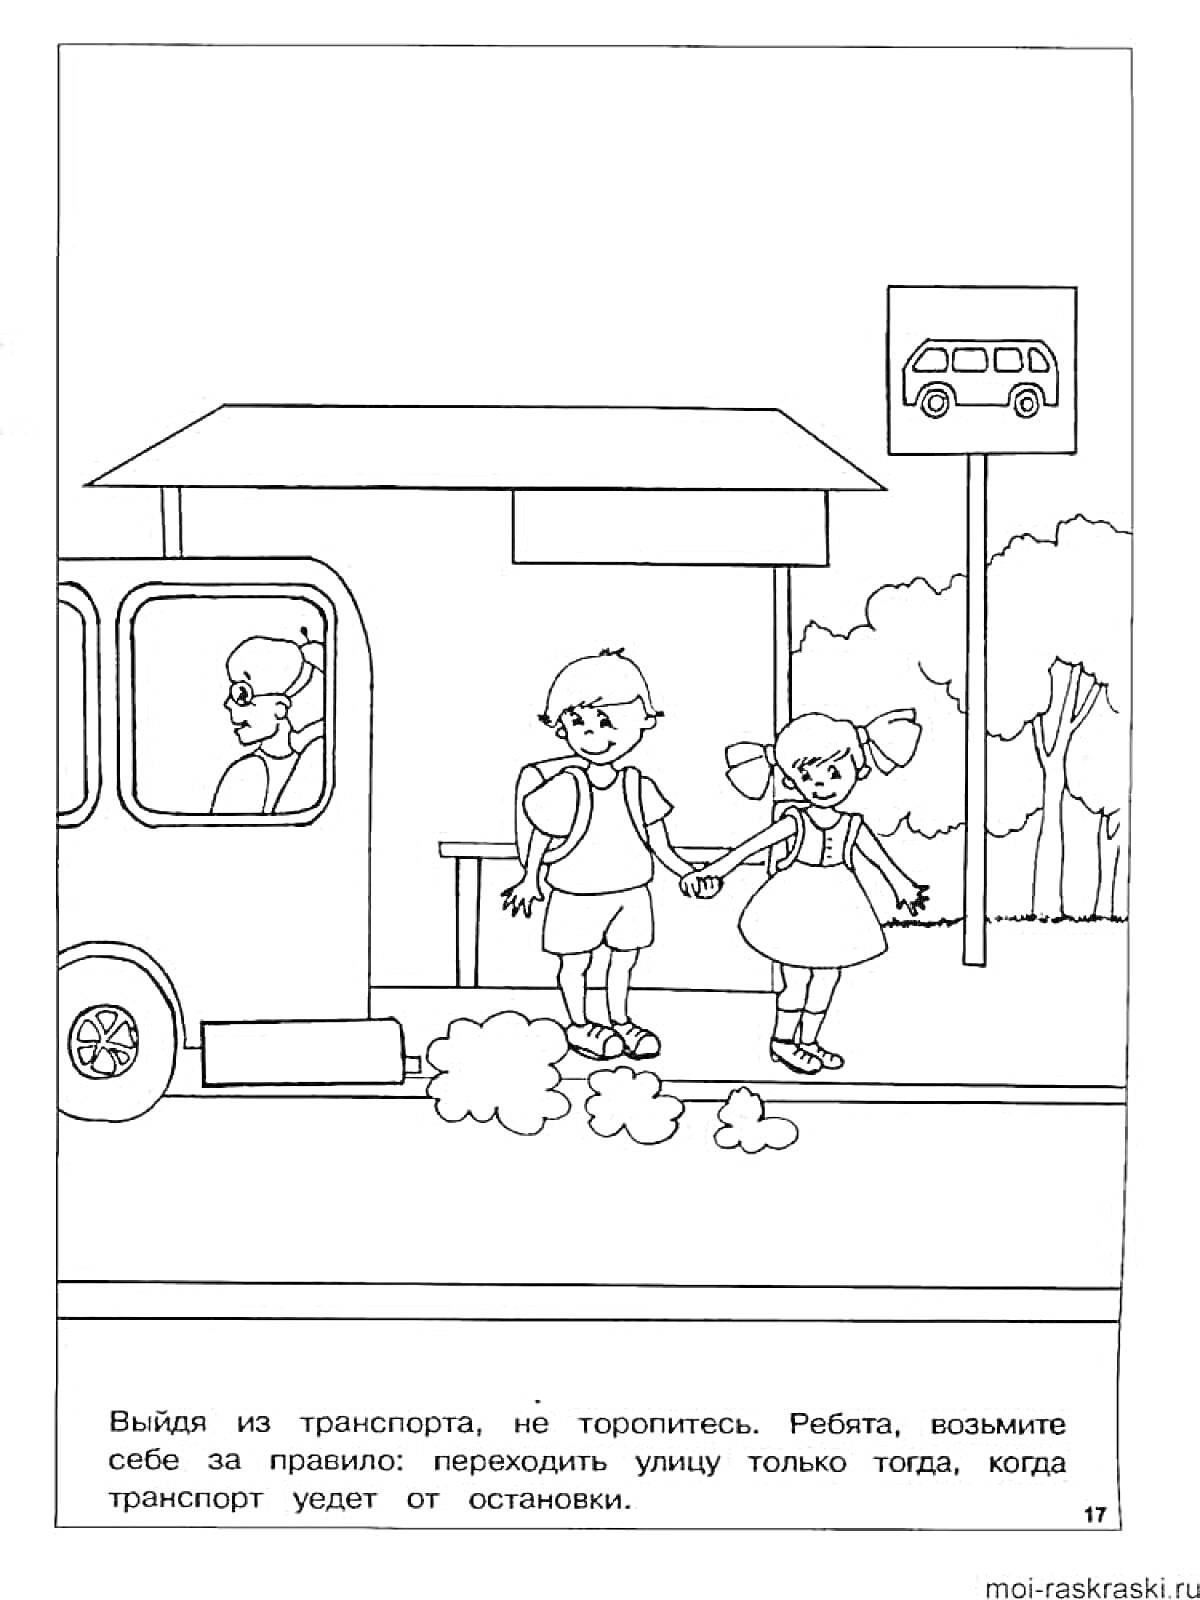 Раскраска Остановка общественного транспорта - дети переходят дорогу